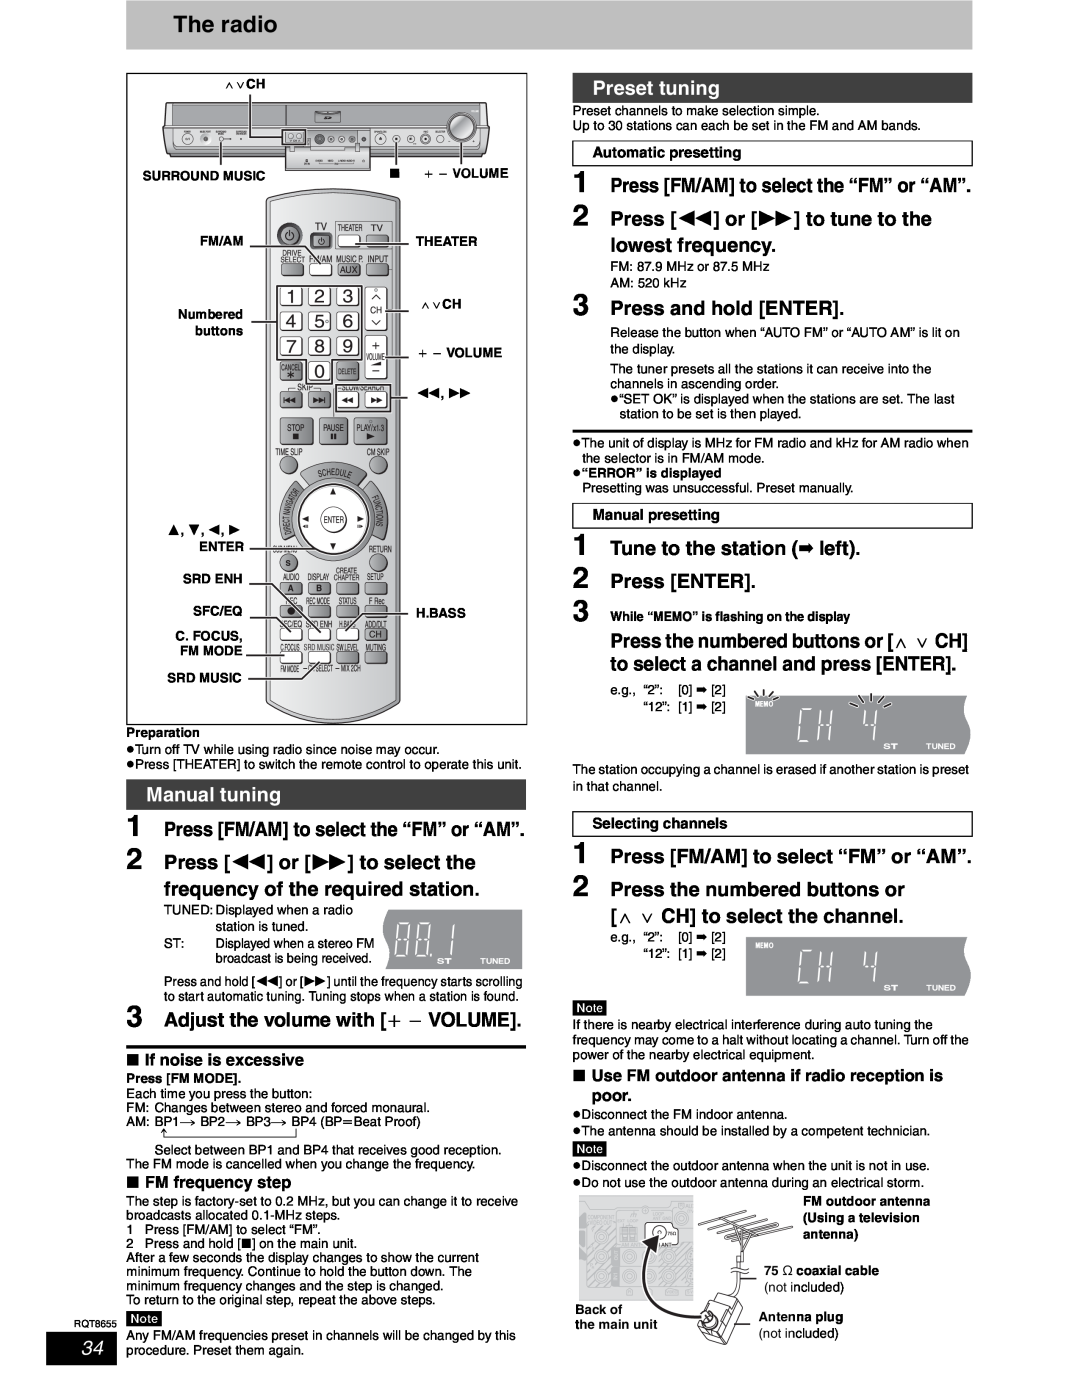 Panasonic SC-RT50 warranty The radio, Manual tuning, Preset tuning 